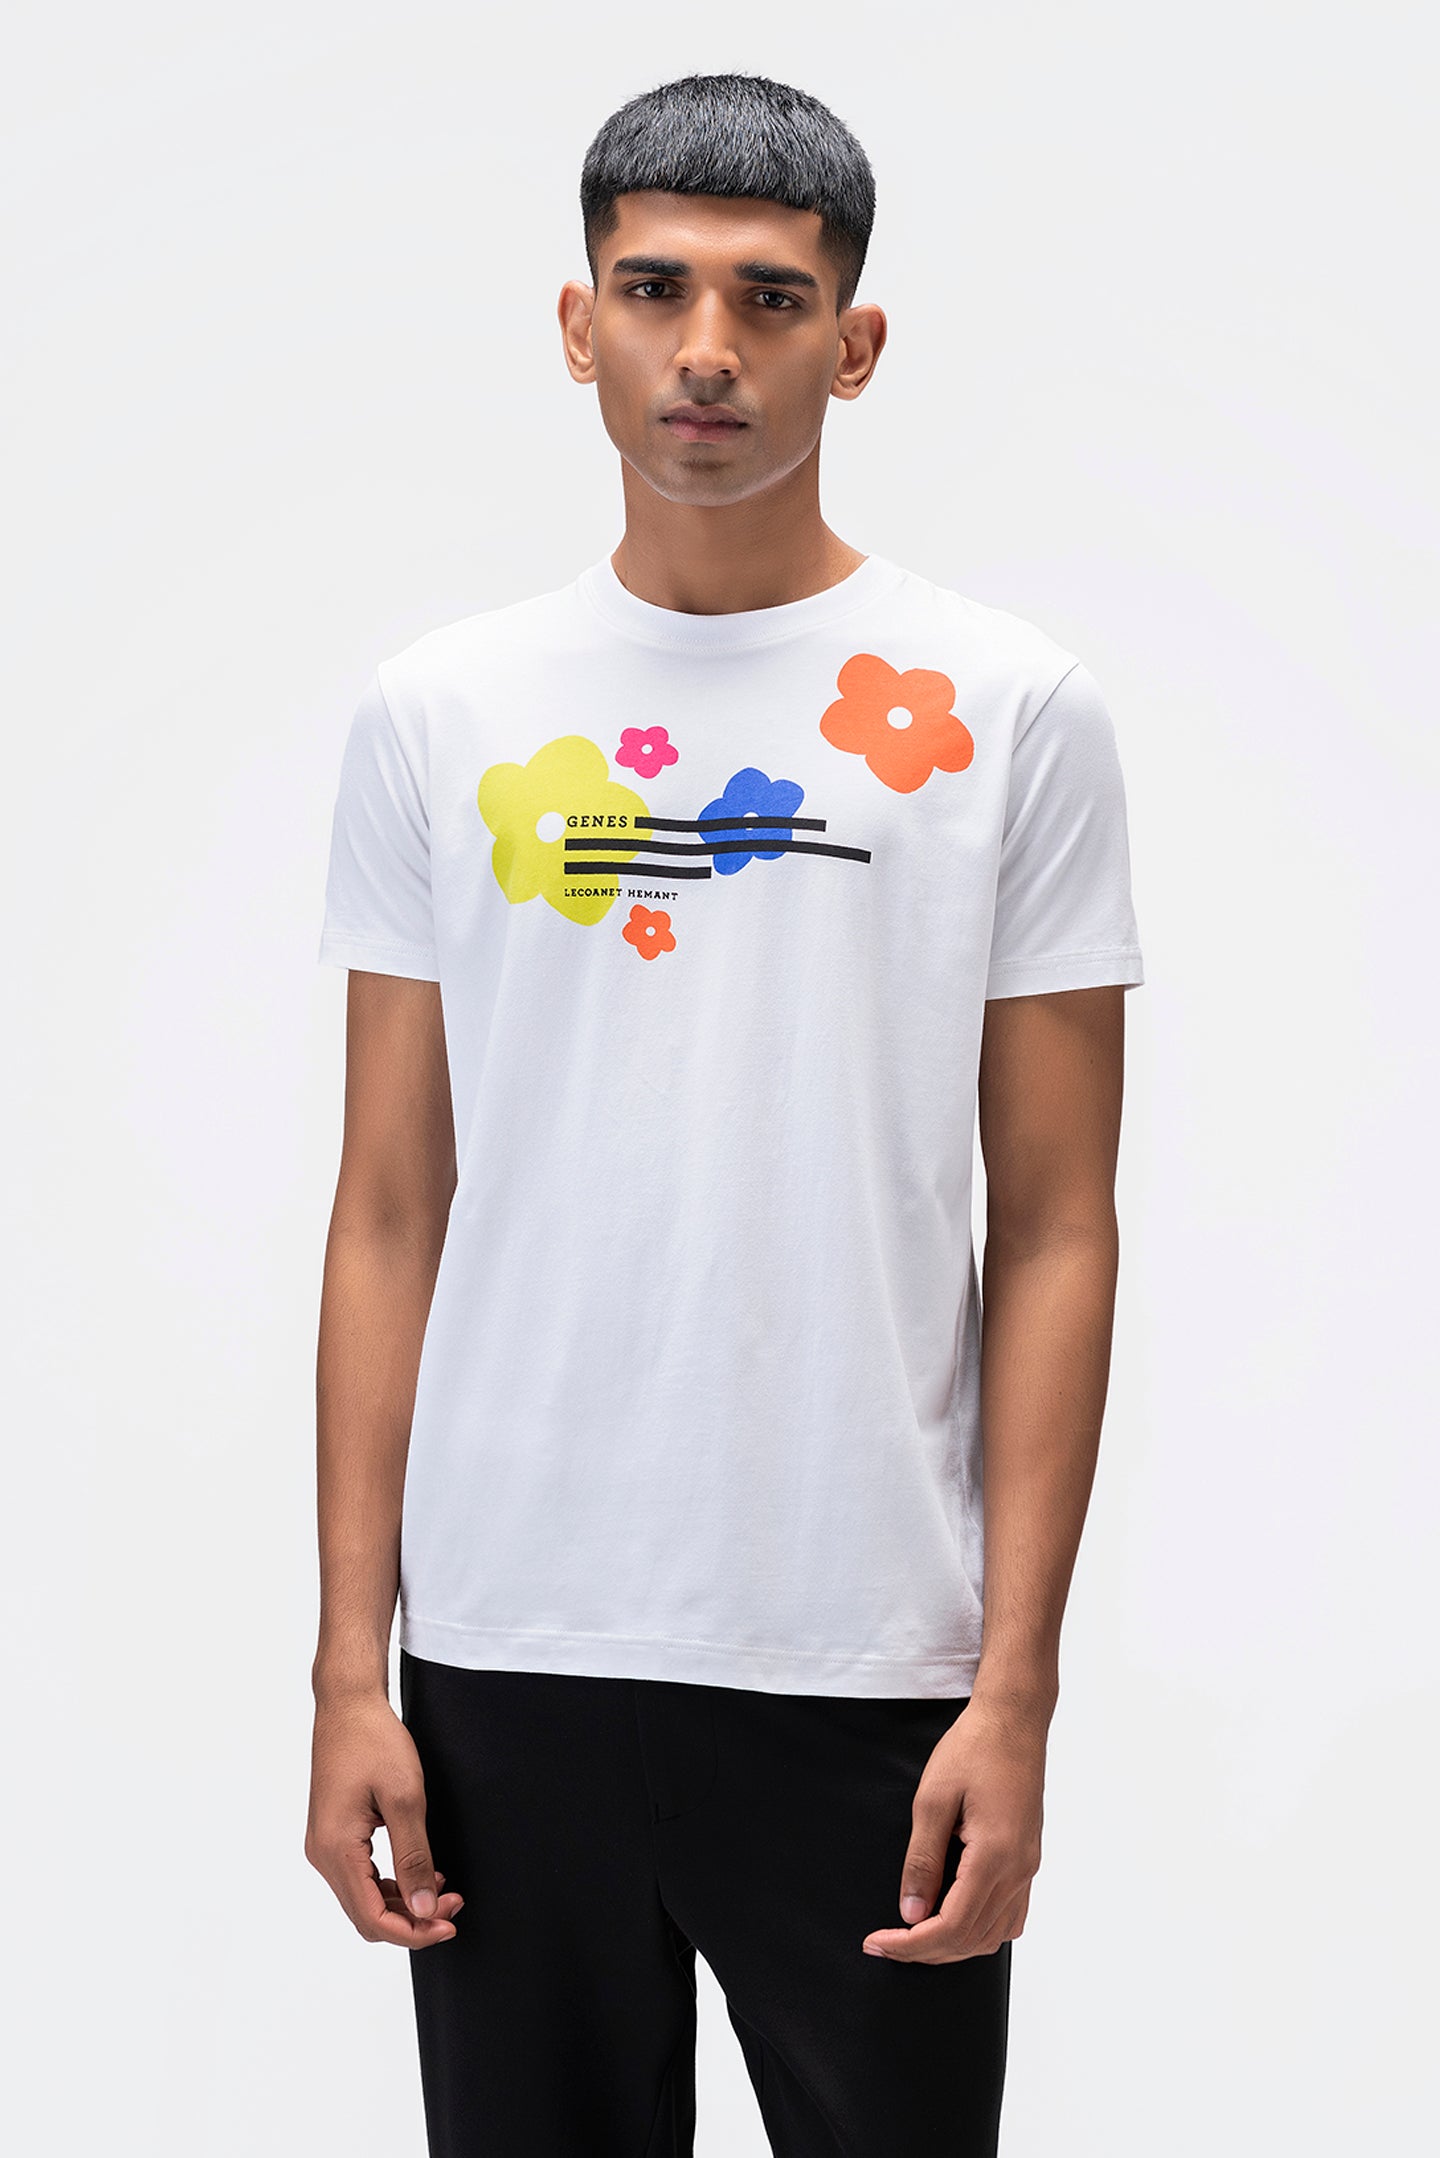 Multicolored Genes Florals Mens T-shirt